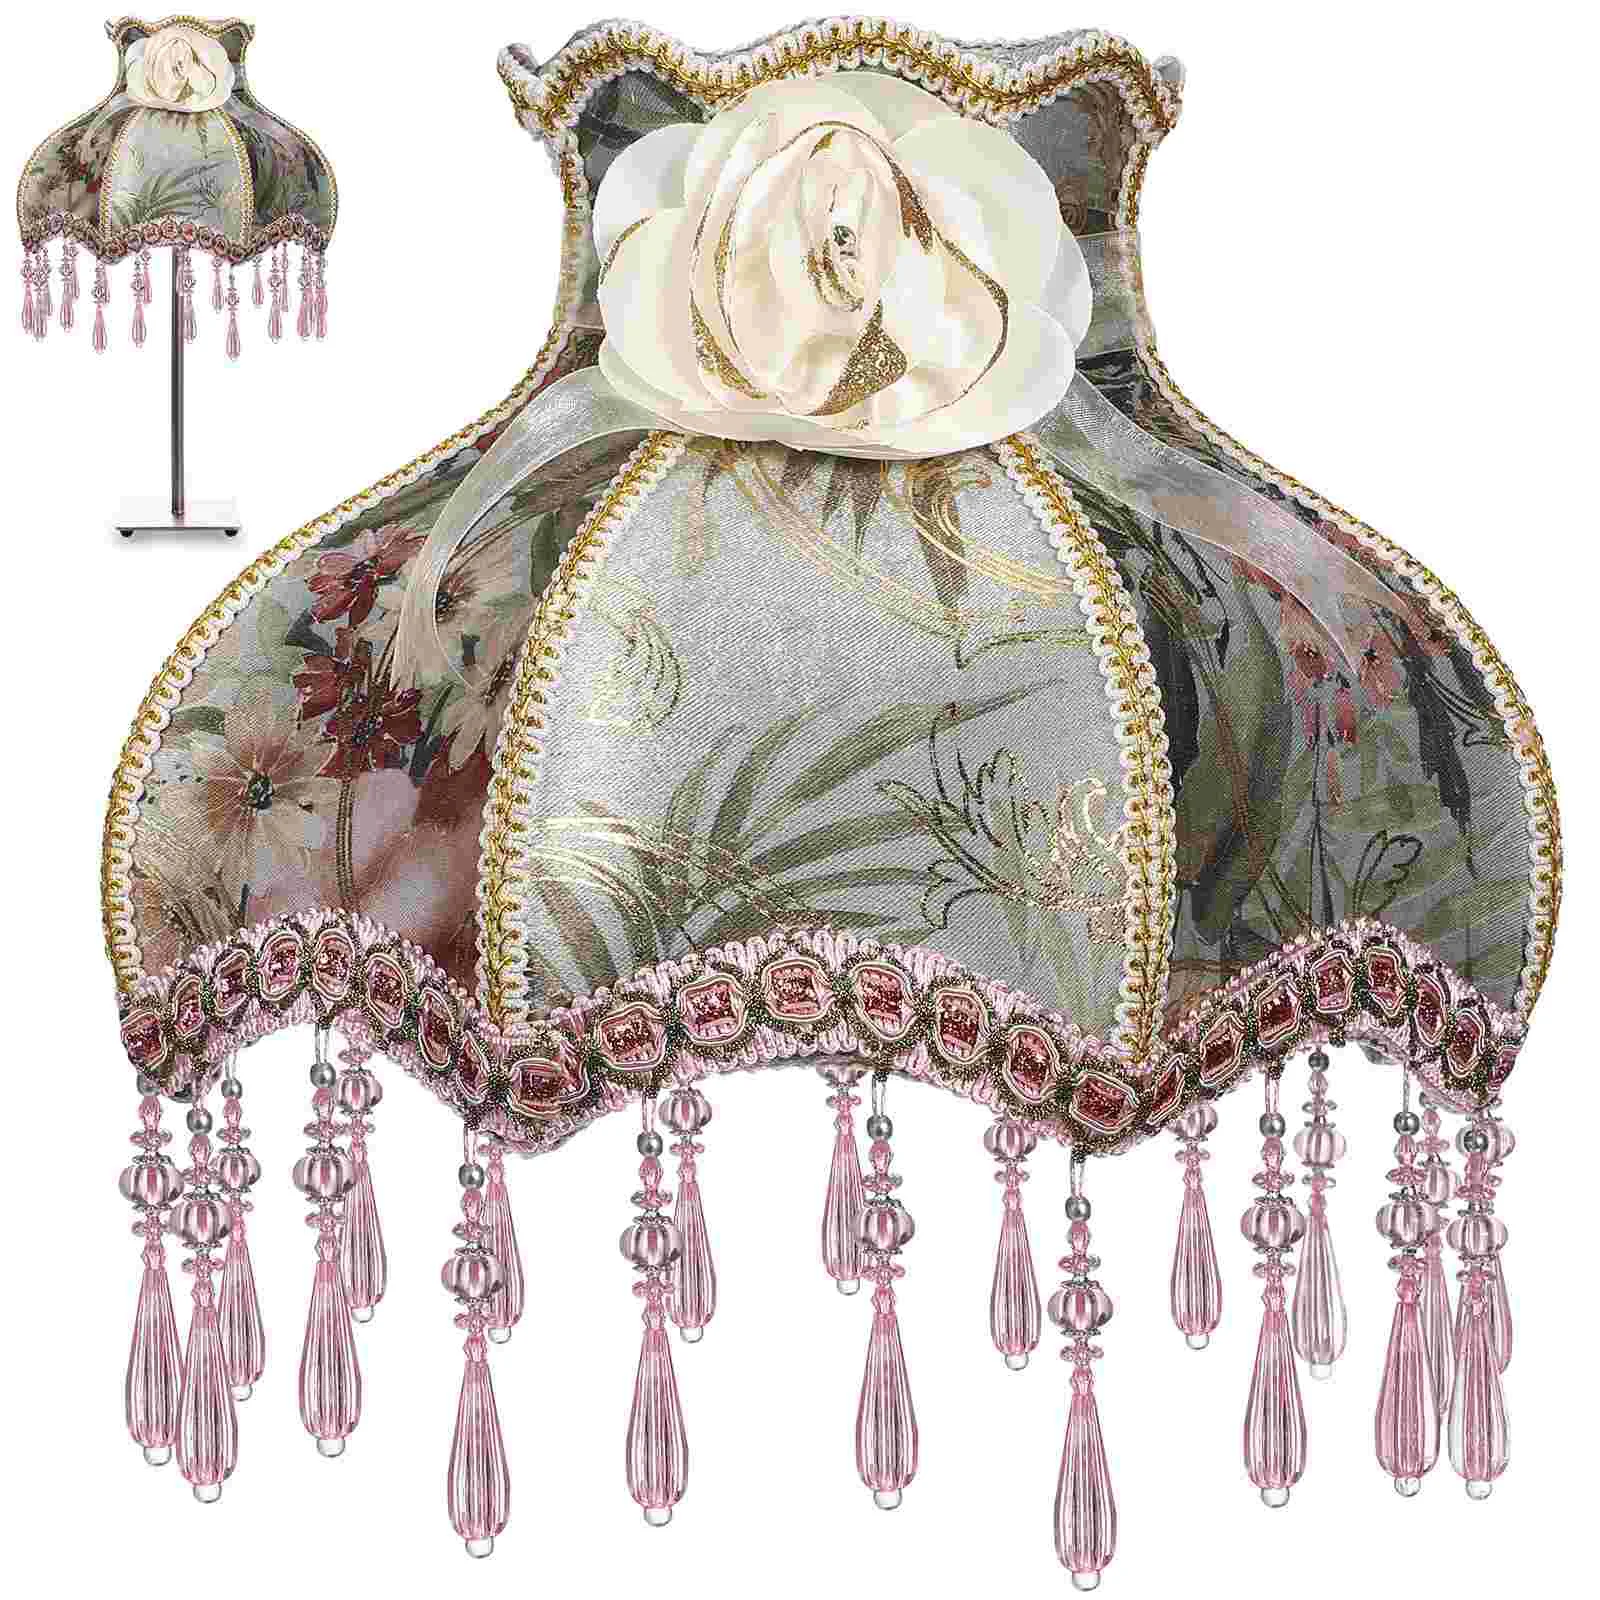 

Винтажный абажур в виде лампы в викторианском стиле, бахрома, купольная лампа в виде фестона, крышка E27, европейские тканевые Чехлы для ламп